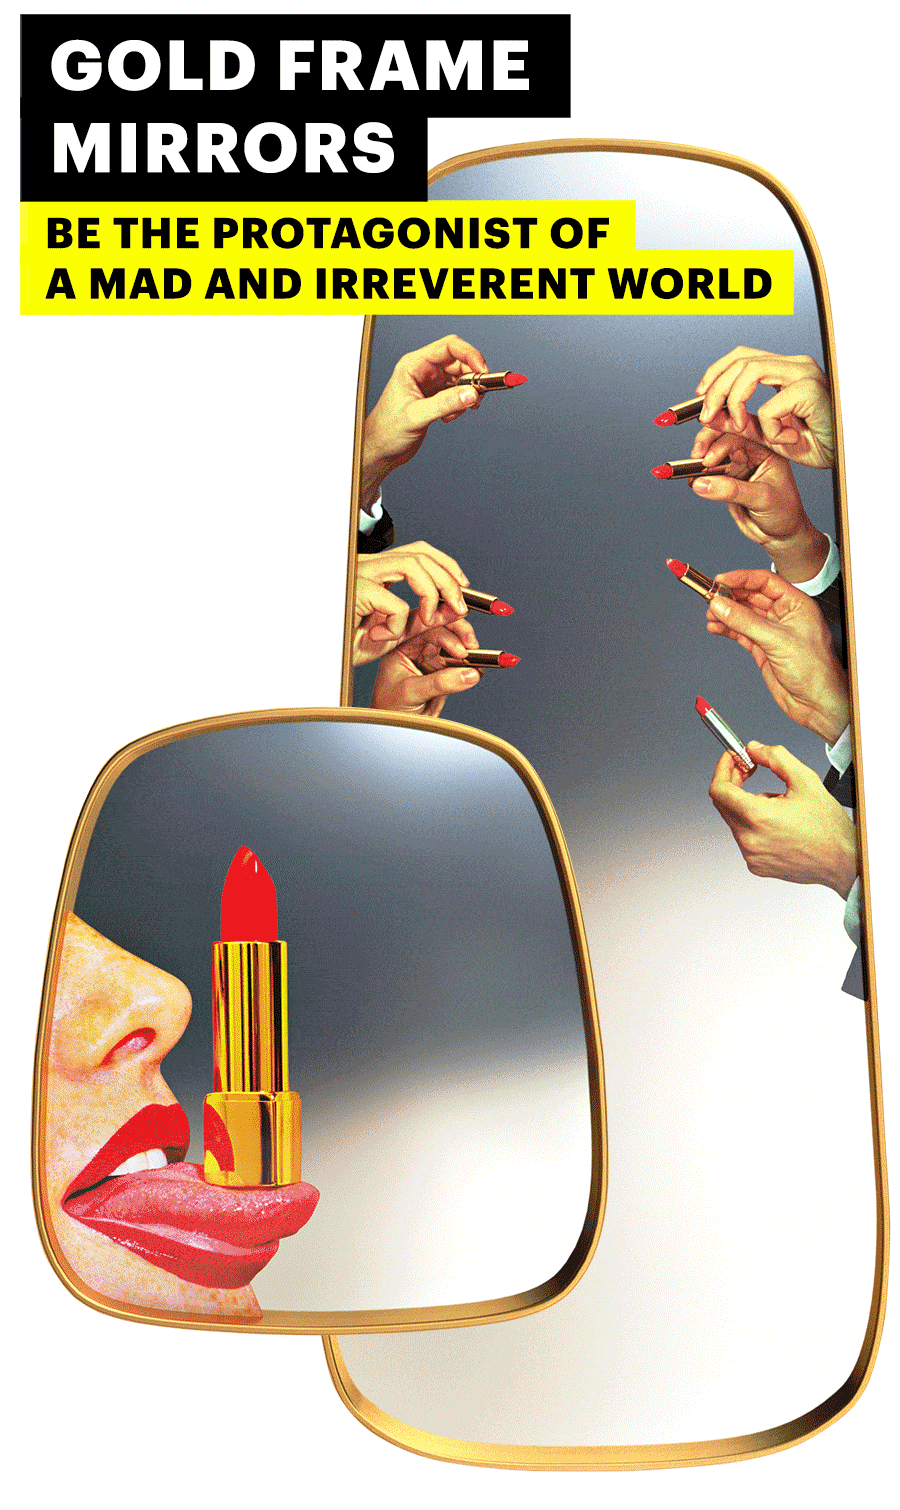 mirror_gold